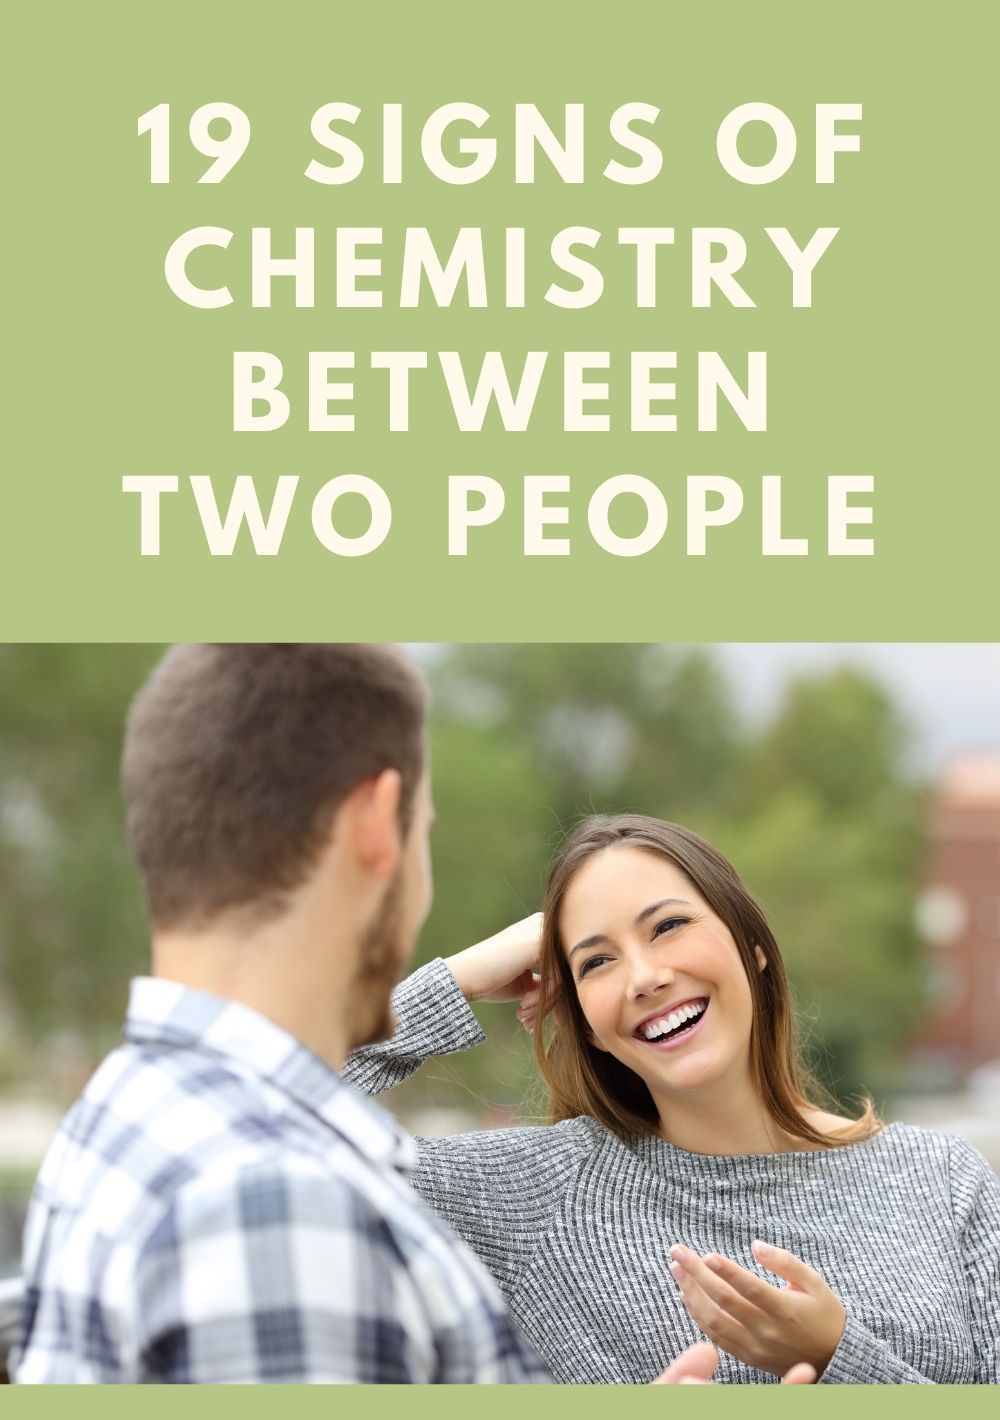 दो लोगों के बीच रसायन विज्ञान के लक्षण